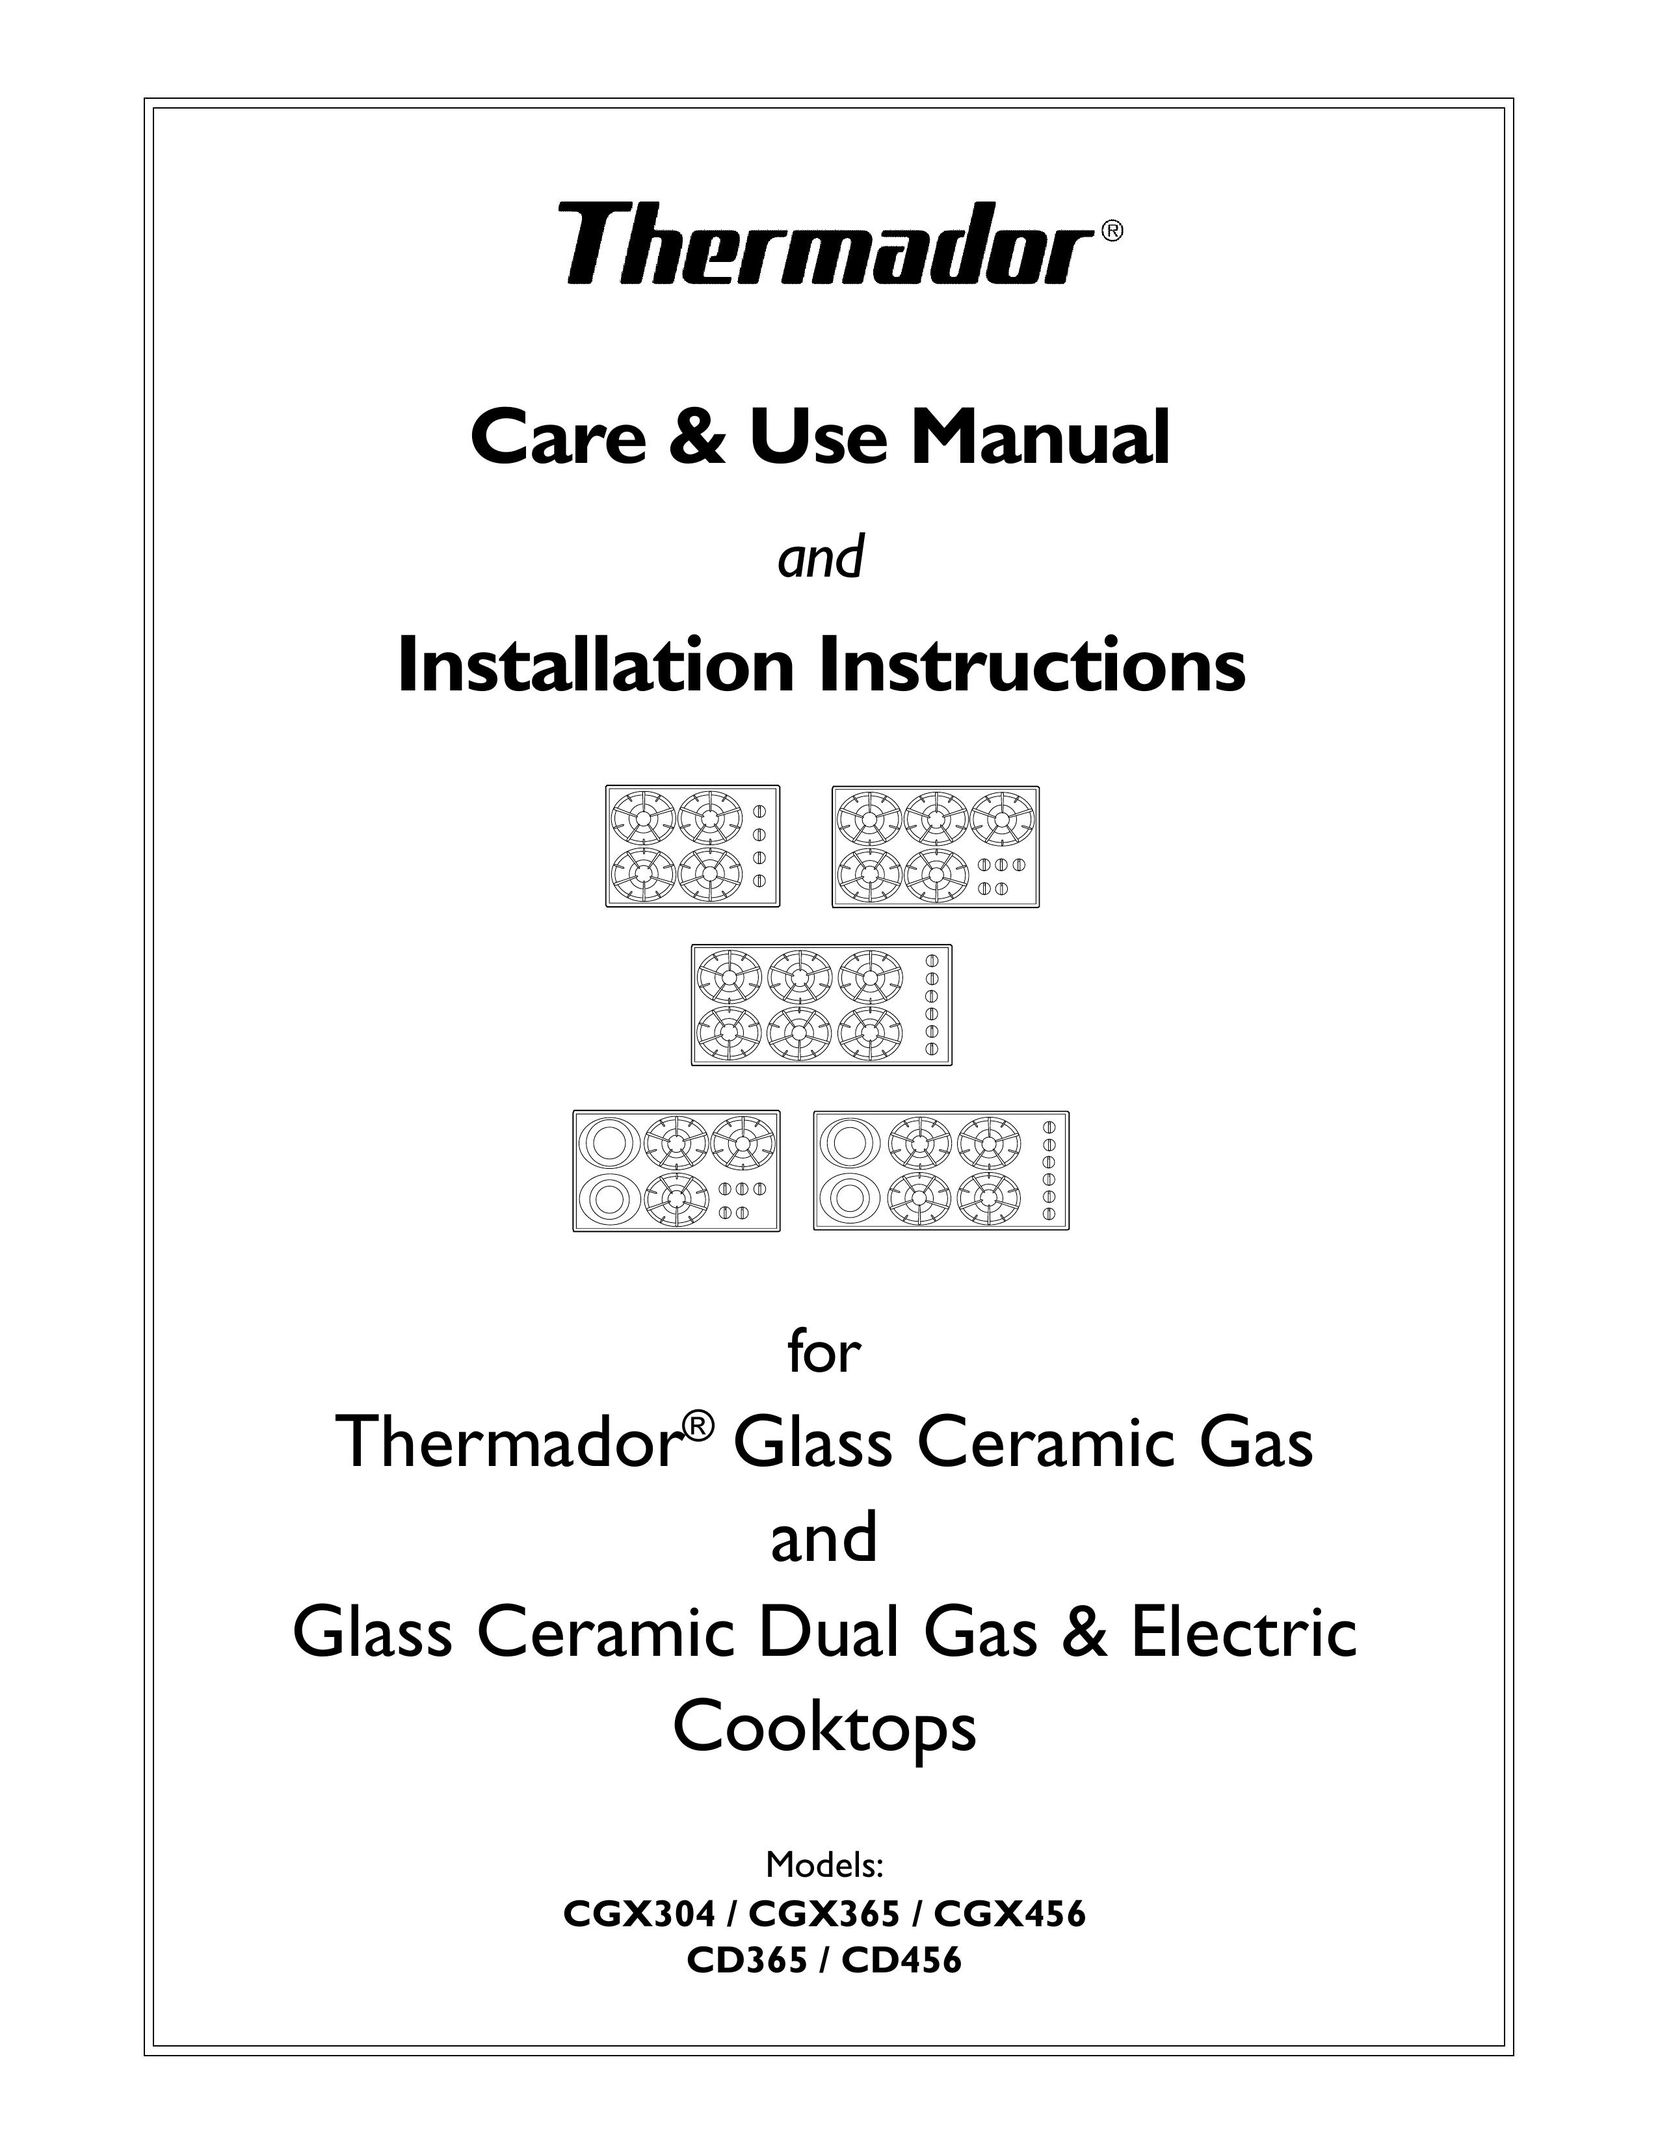 Thermador CGX304 Cooktop User Manual